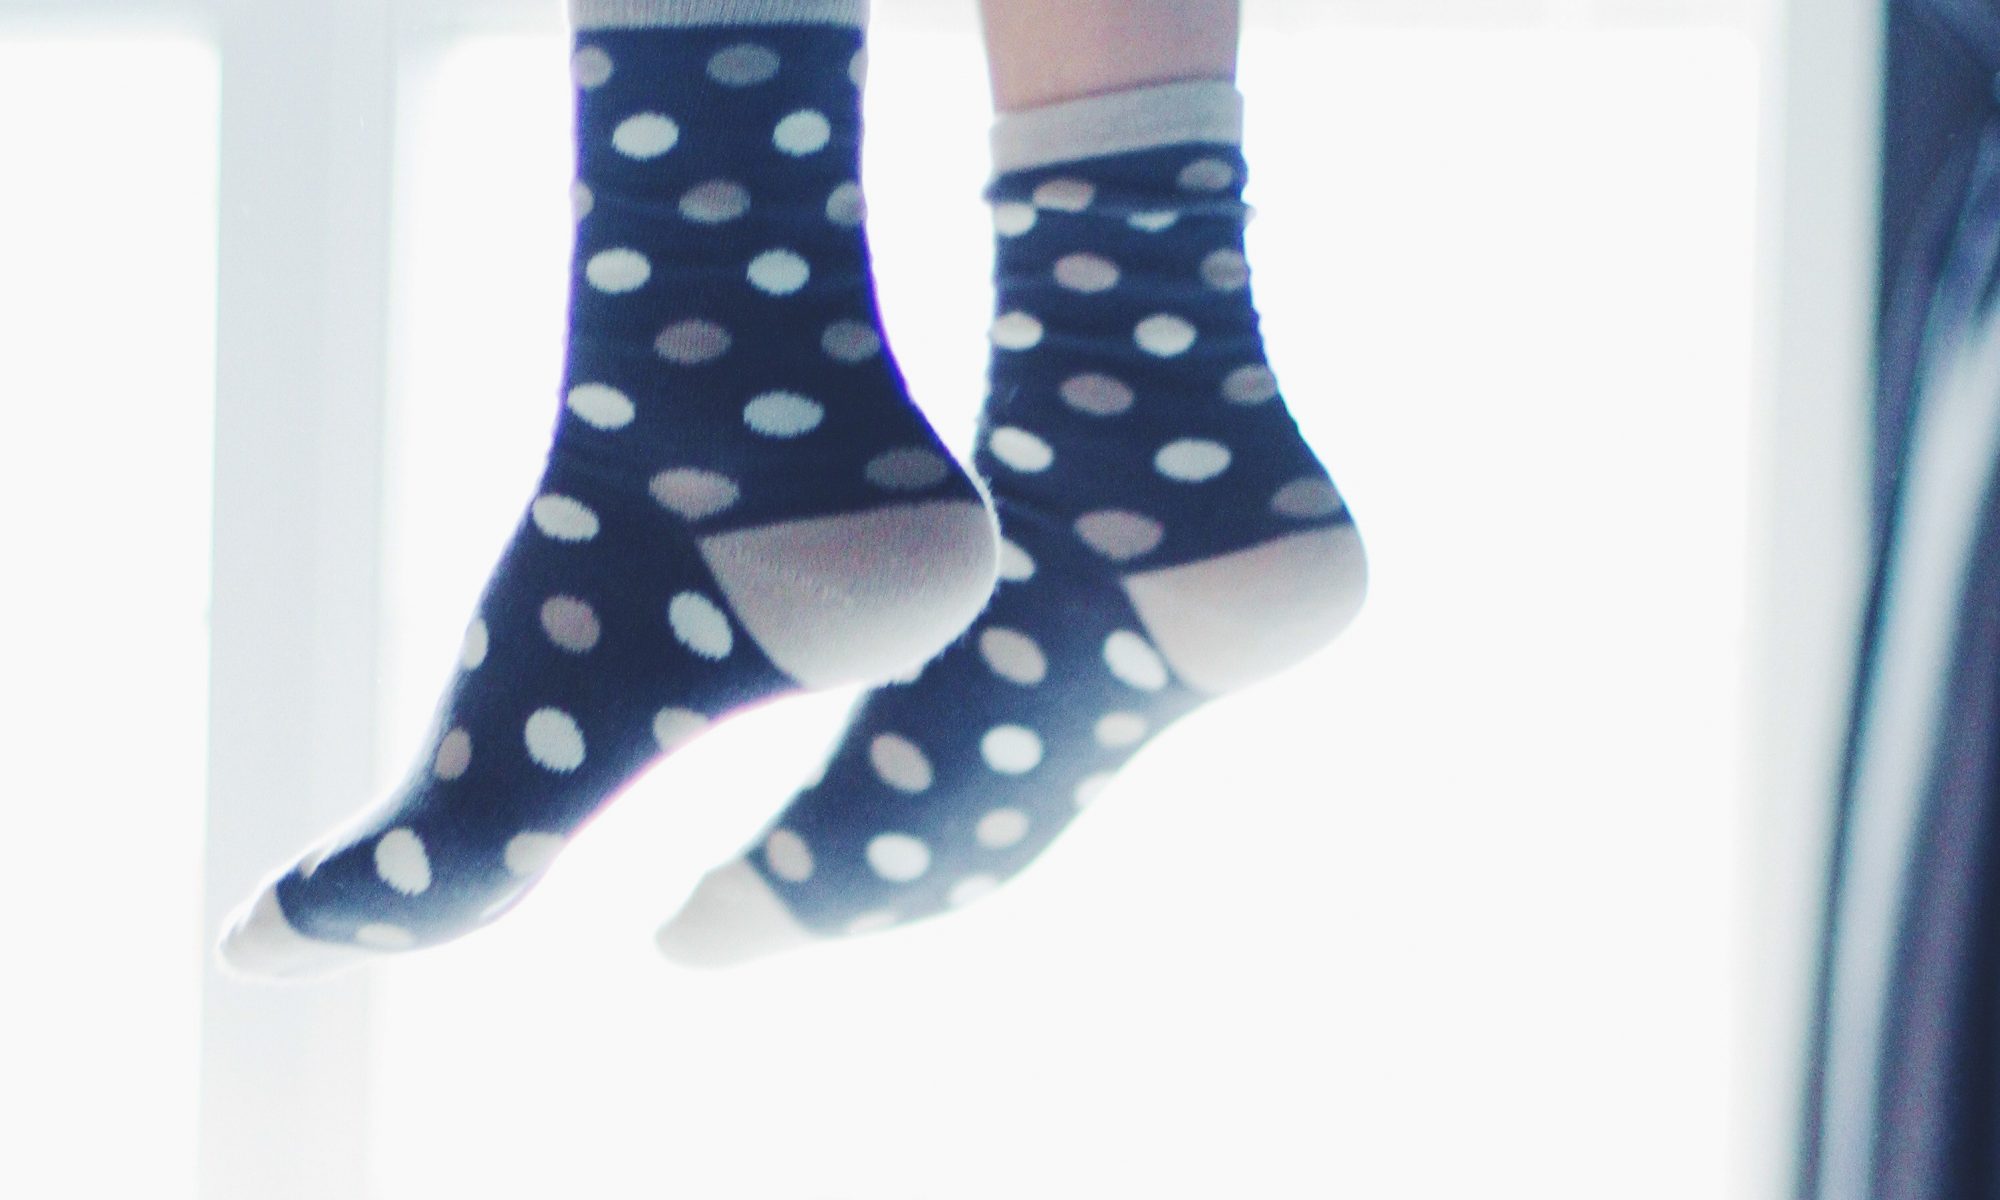 Dot patterned socks